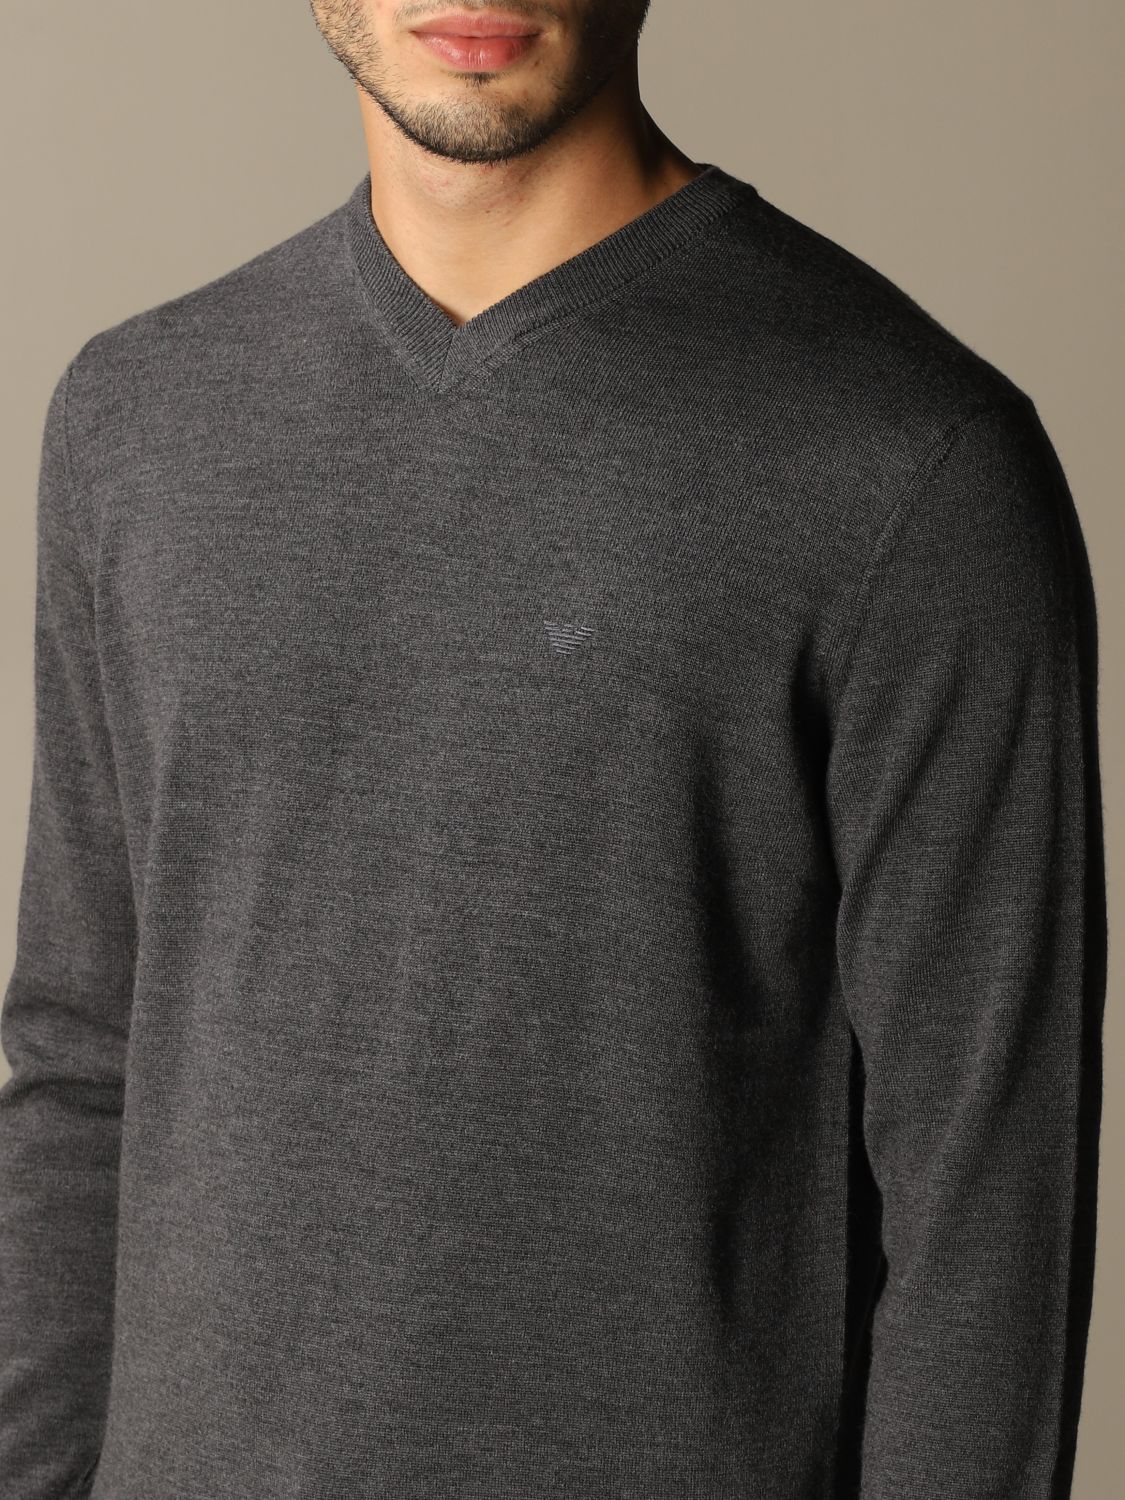 EMPORIO ARMANI: v-neck sweater with logo | Sweater Emporio Armani Men